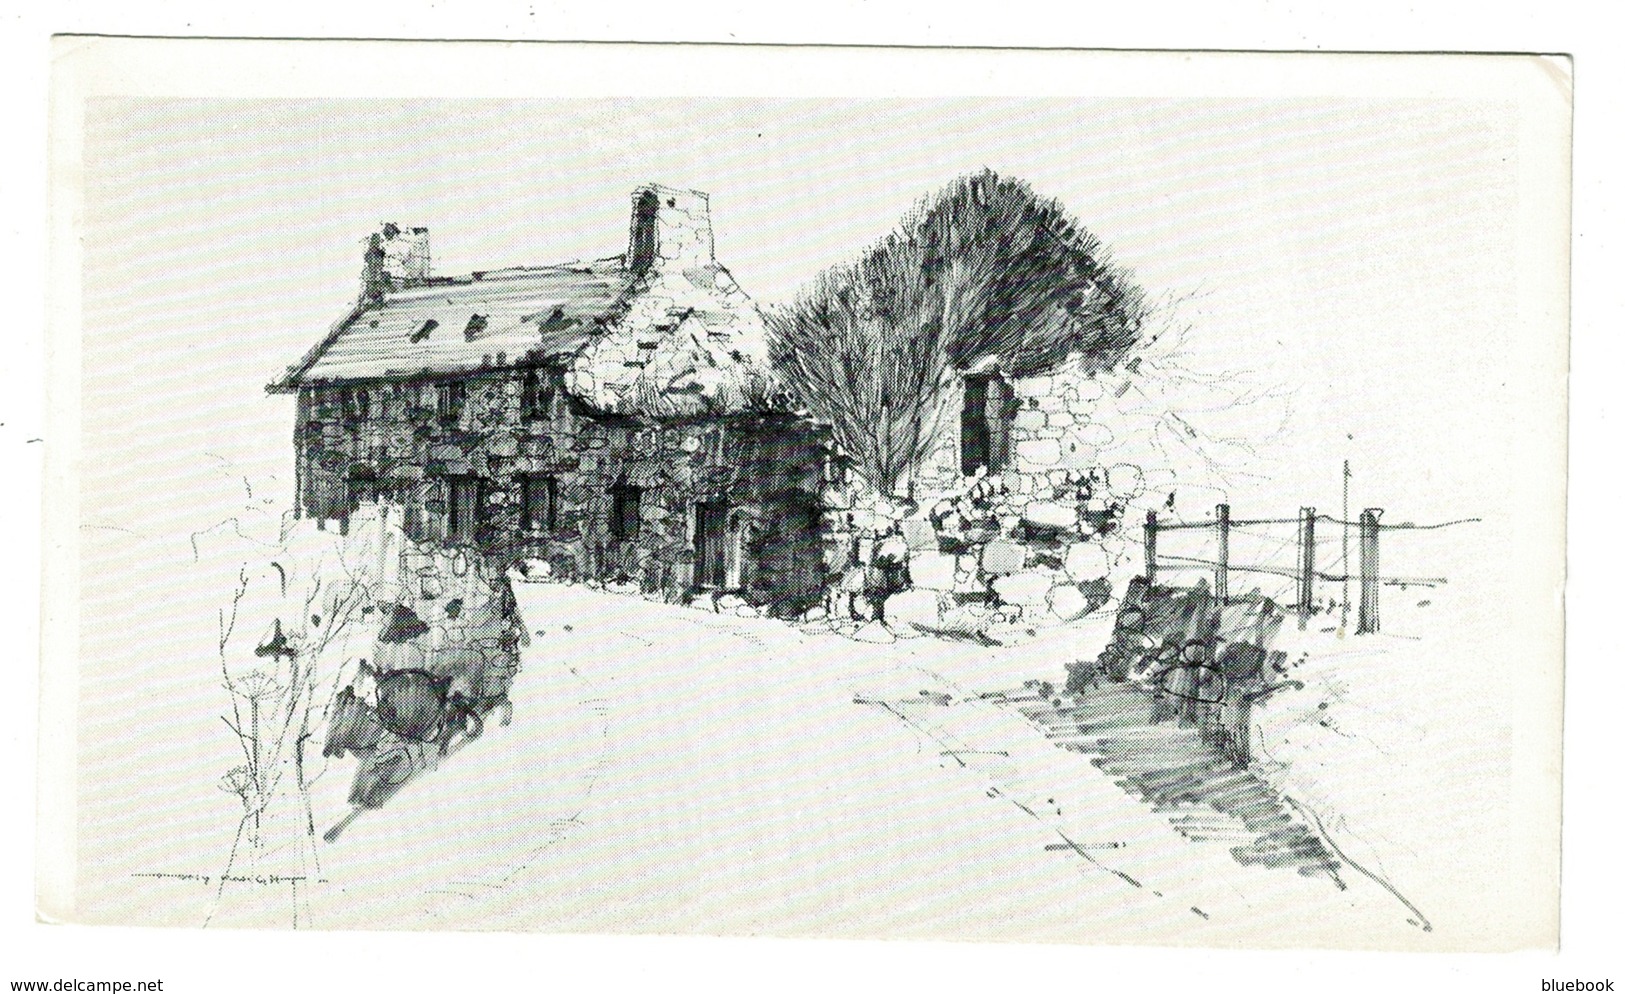 Ref 1367 - Tony Knight Postcard - Llanfair Village - Caernarvonshire Wales - Caernarvonshire